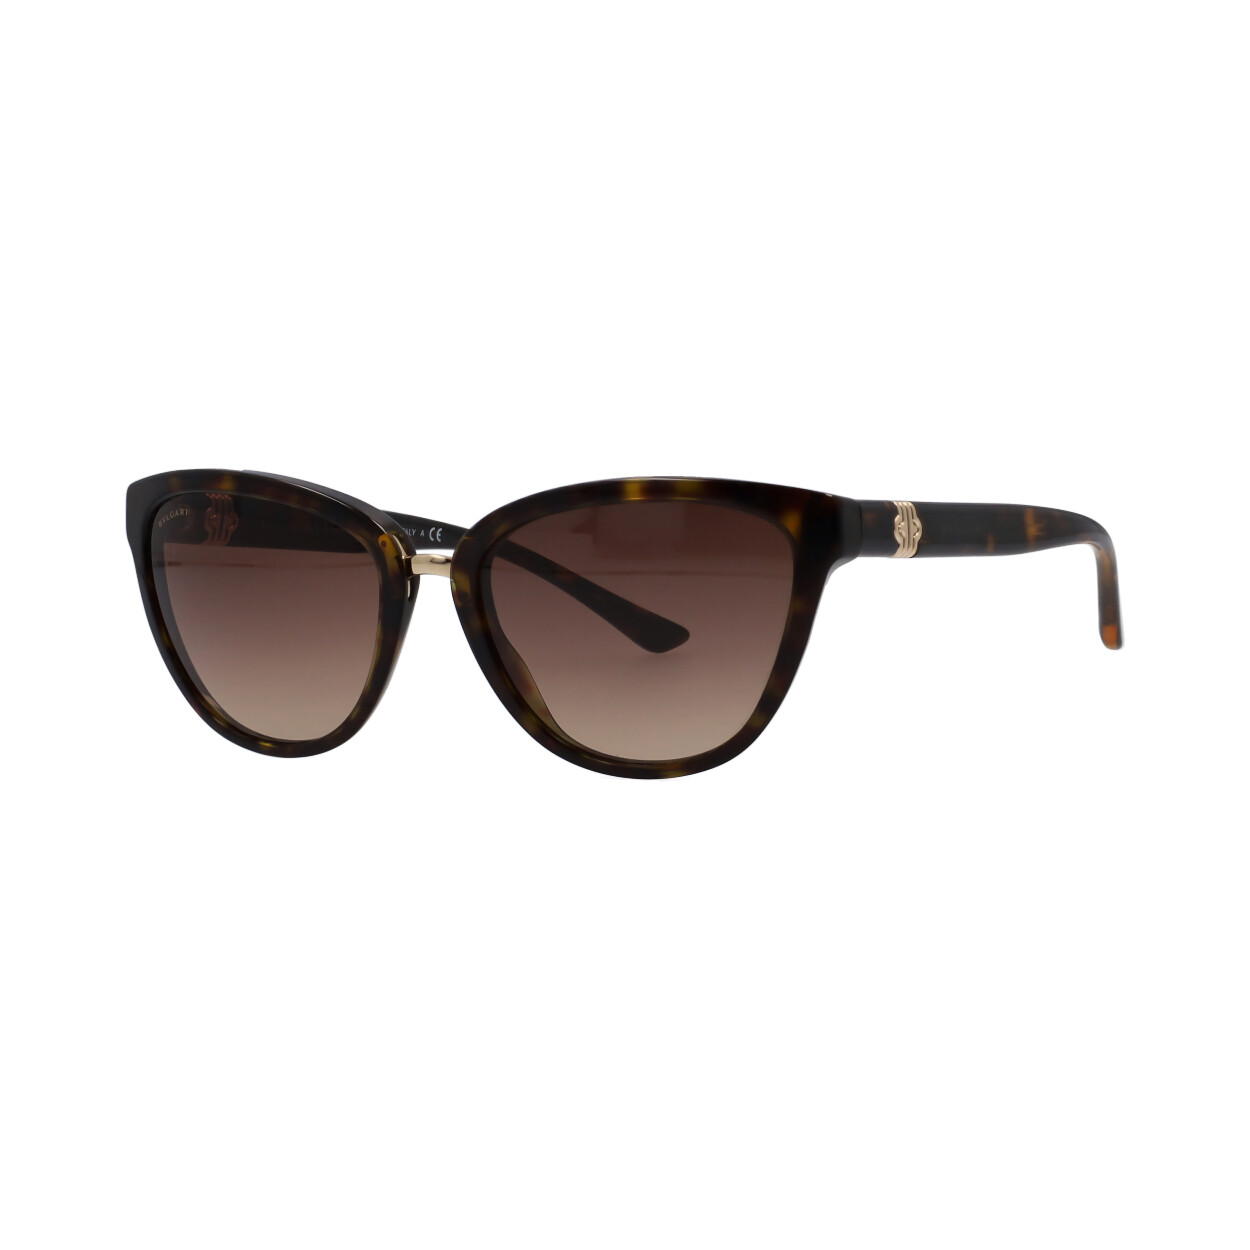 BVLGARI Sunglasses 8165 Tortoise | Luxity